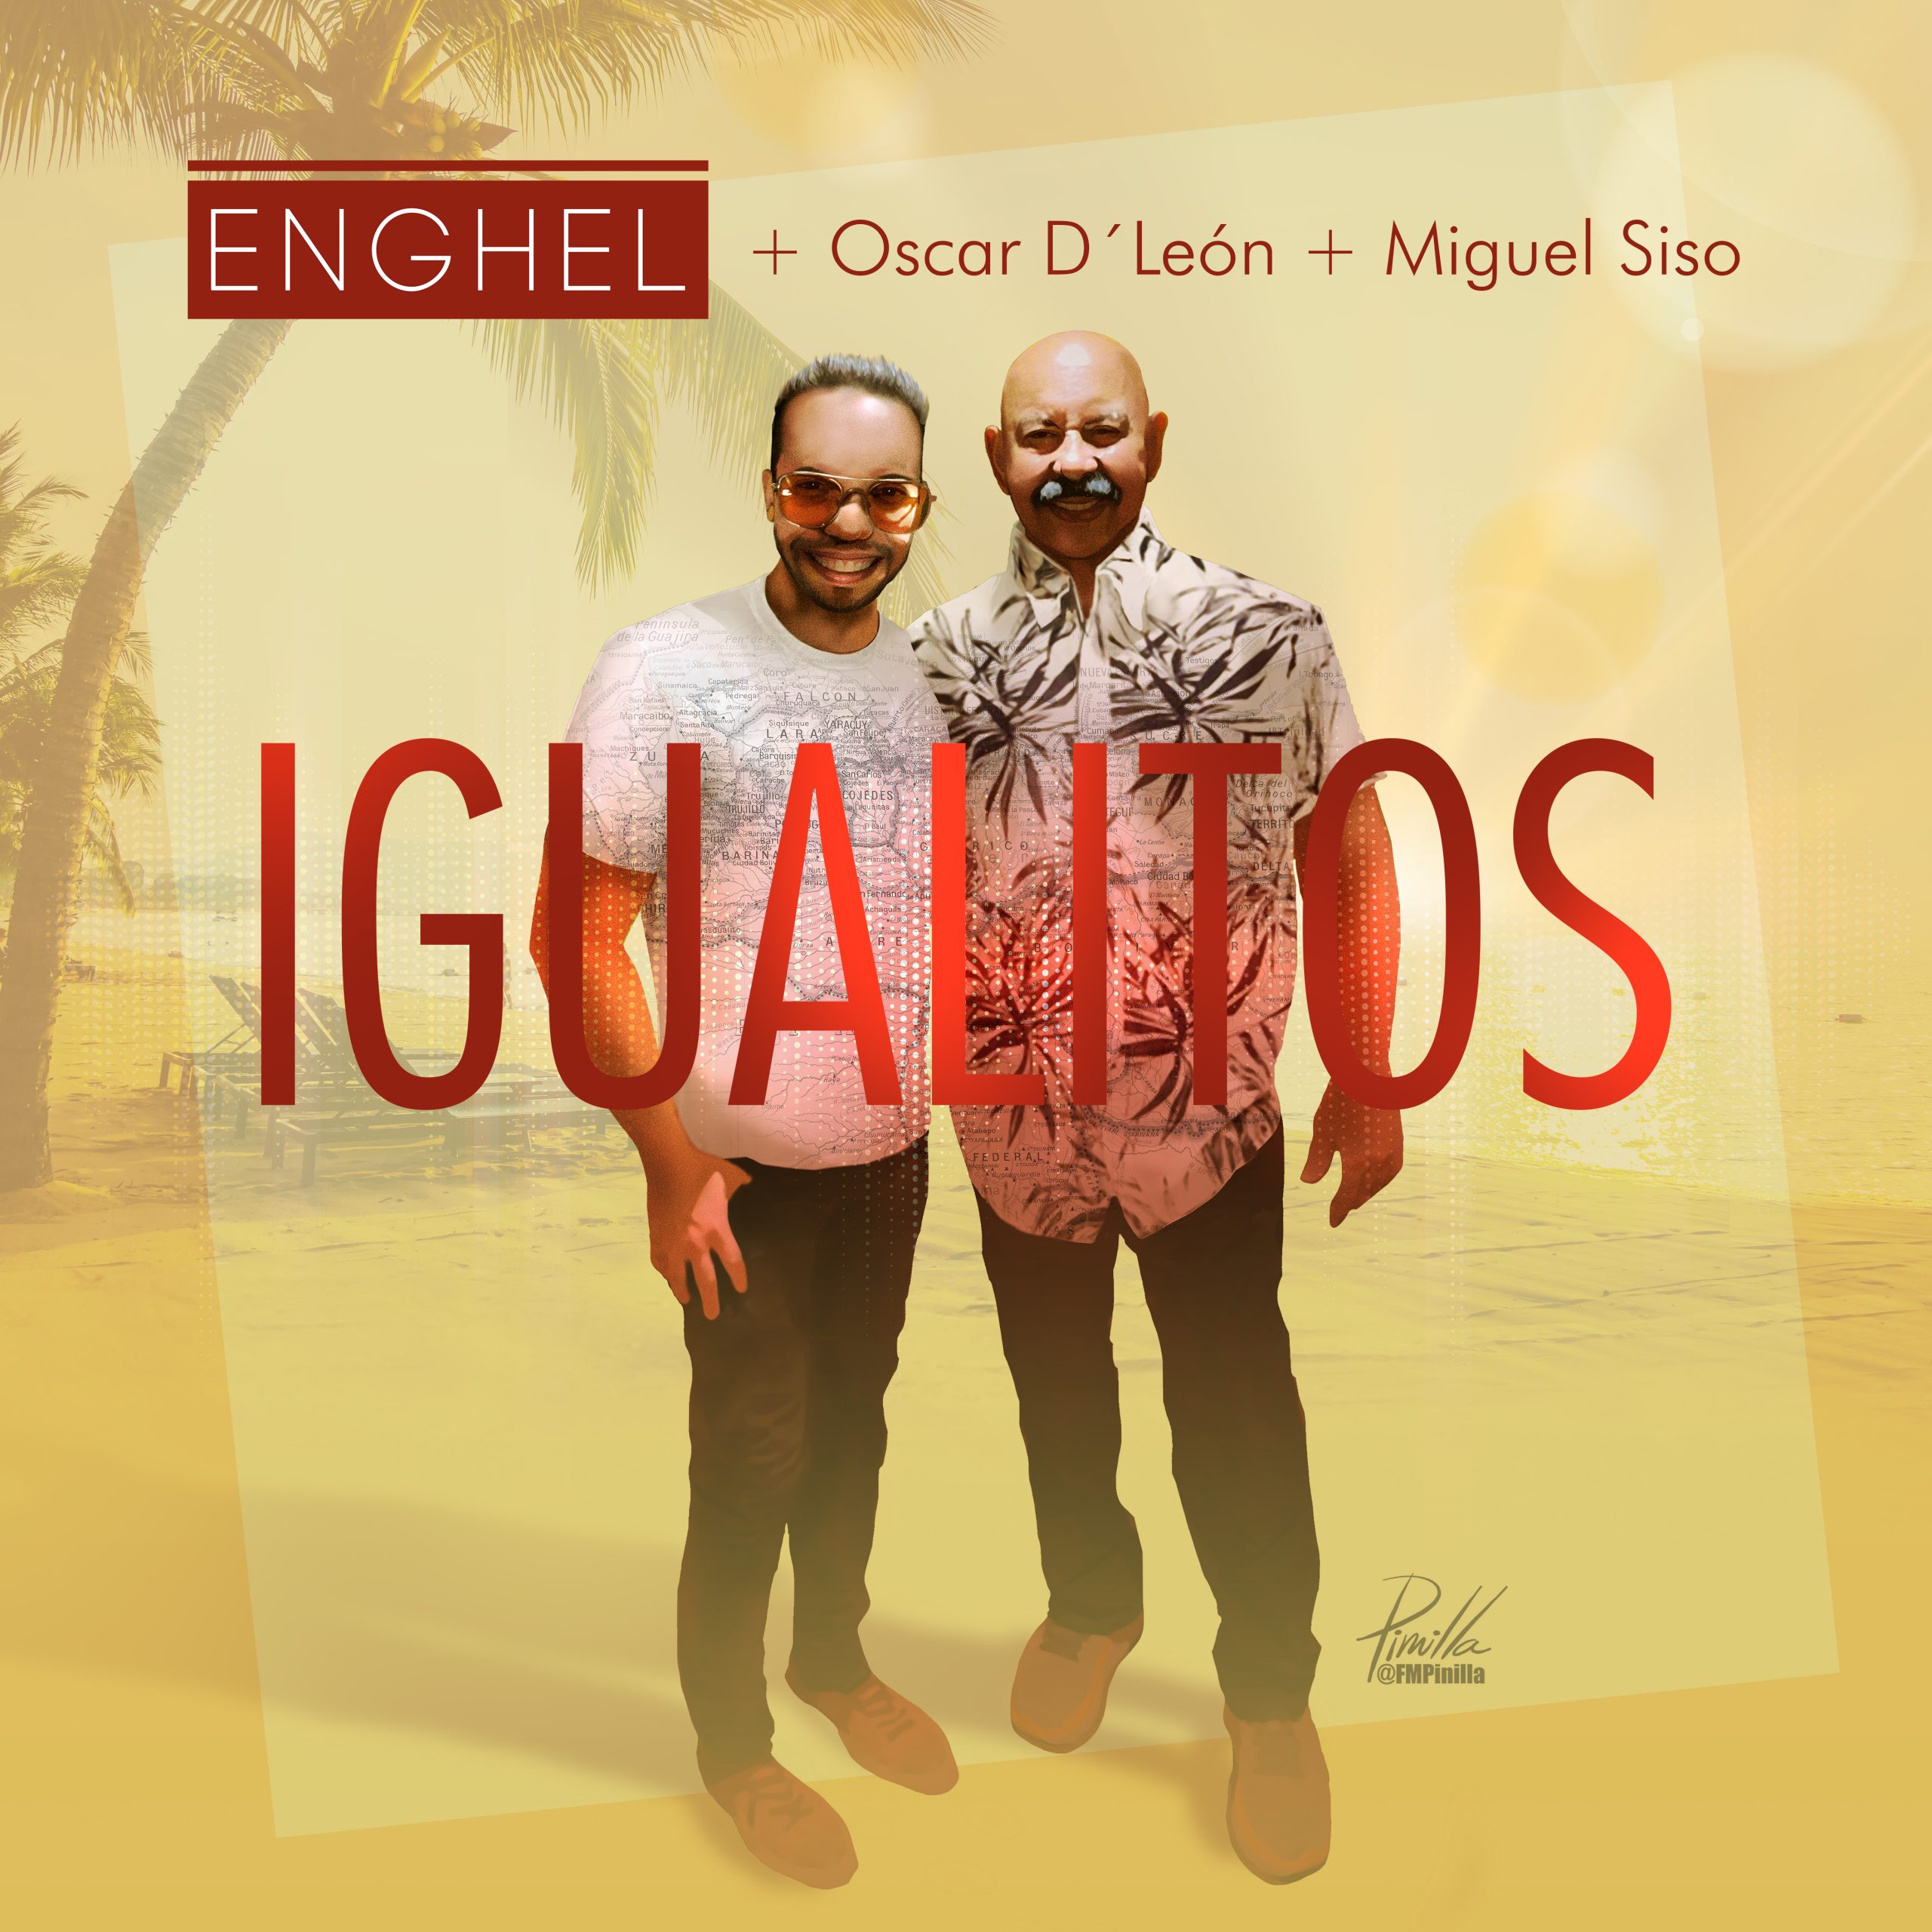 Enghel, Oscar D' León y Miguel Siso presentan 'Igualitos', su nuevo tema bailable